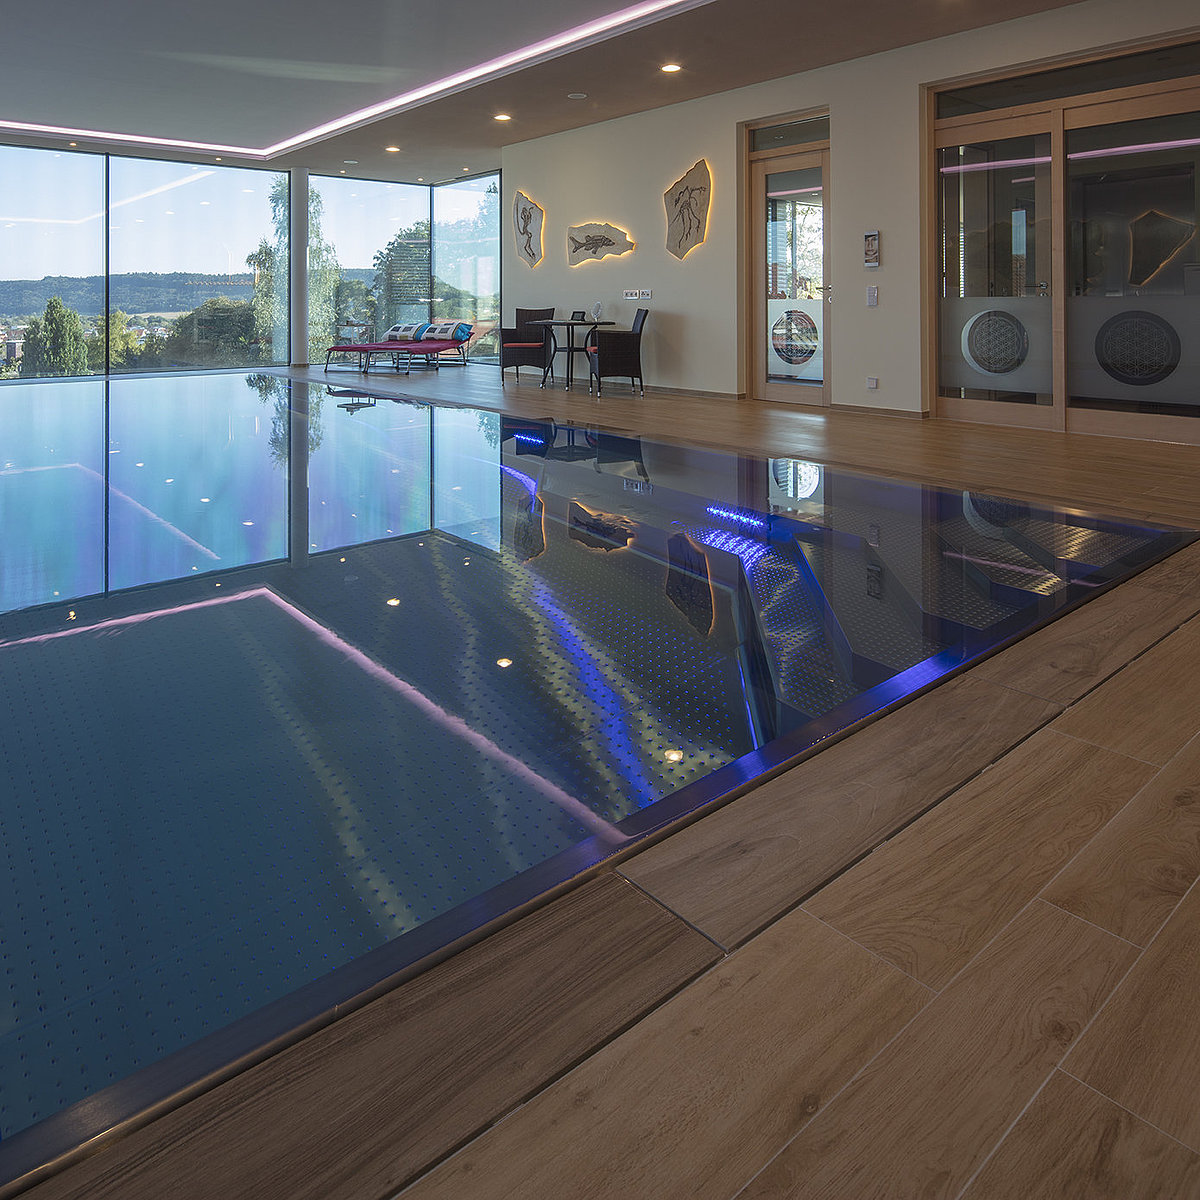 Binnenzwembad met blauwe verlichting en grote ramen aan de voorkant.